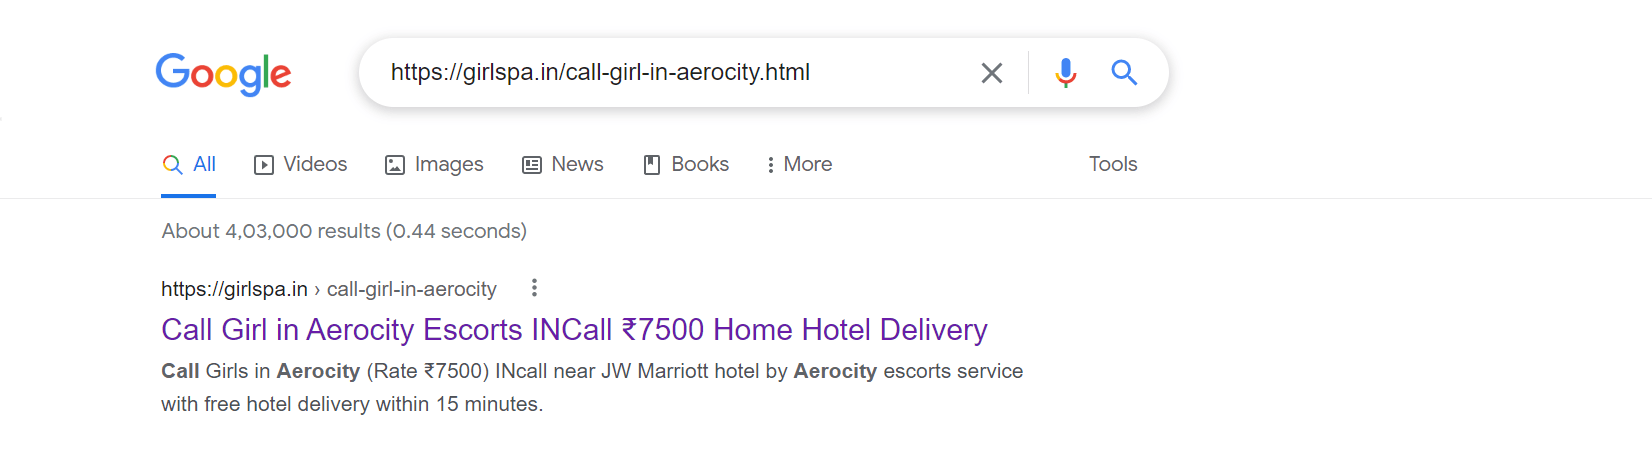 Call Girl In Aerocity